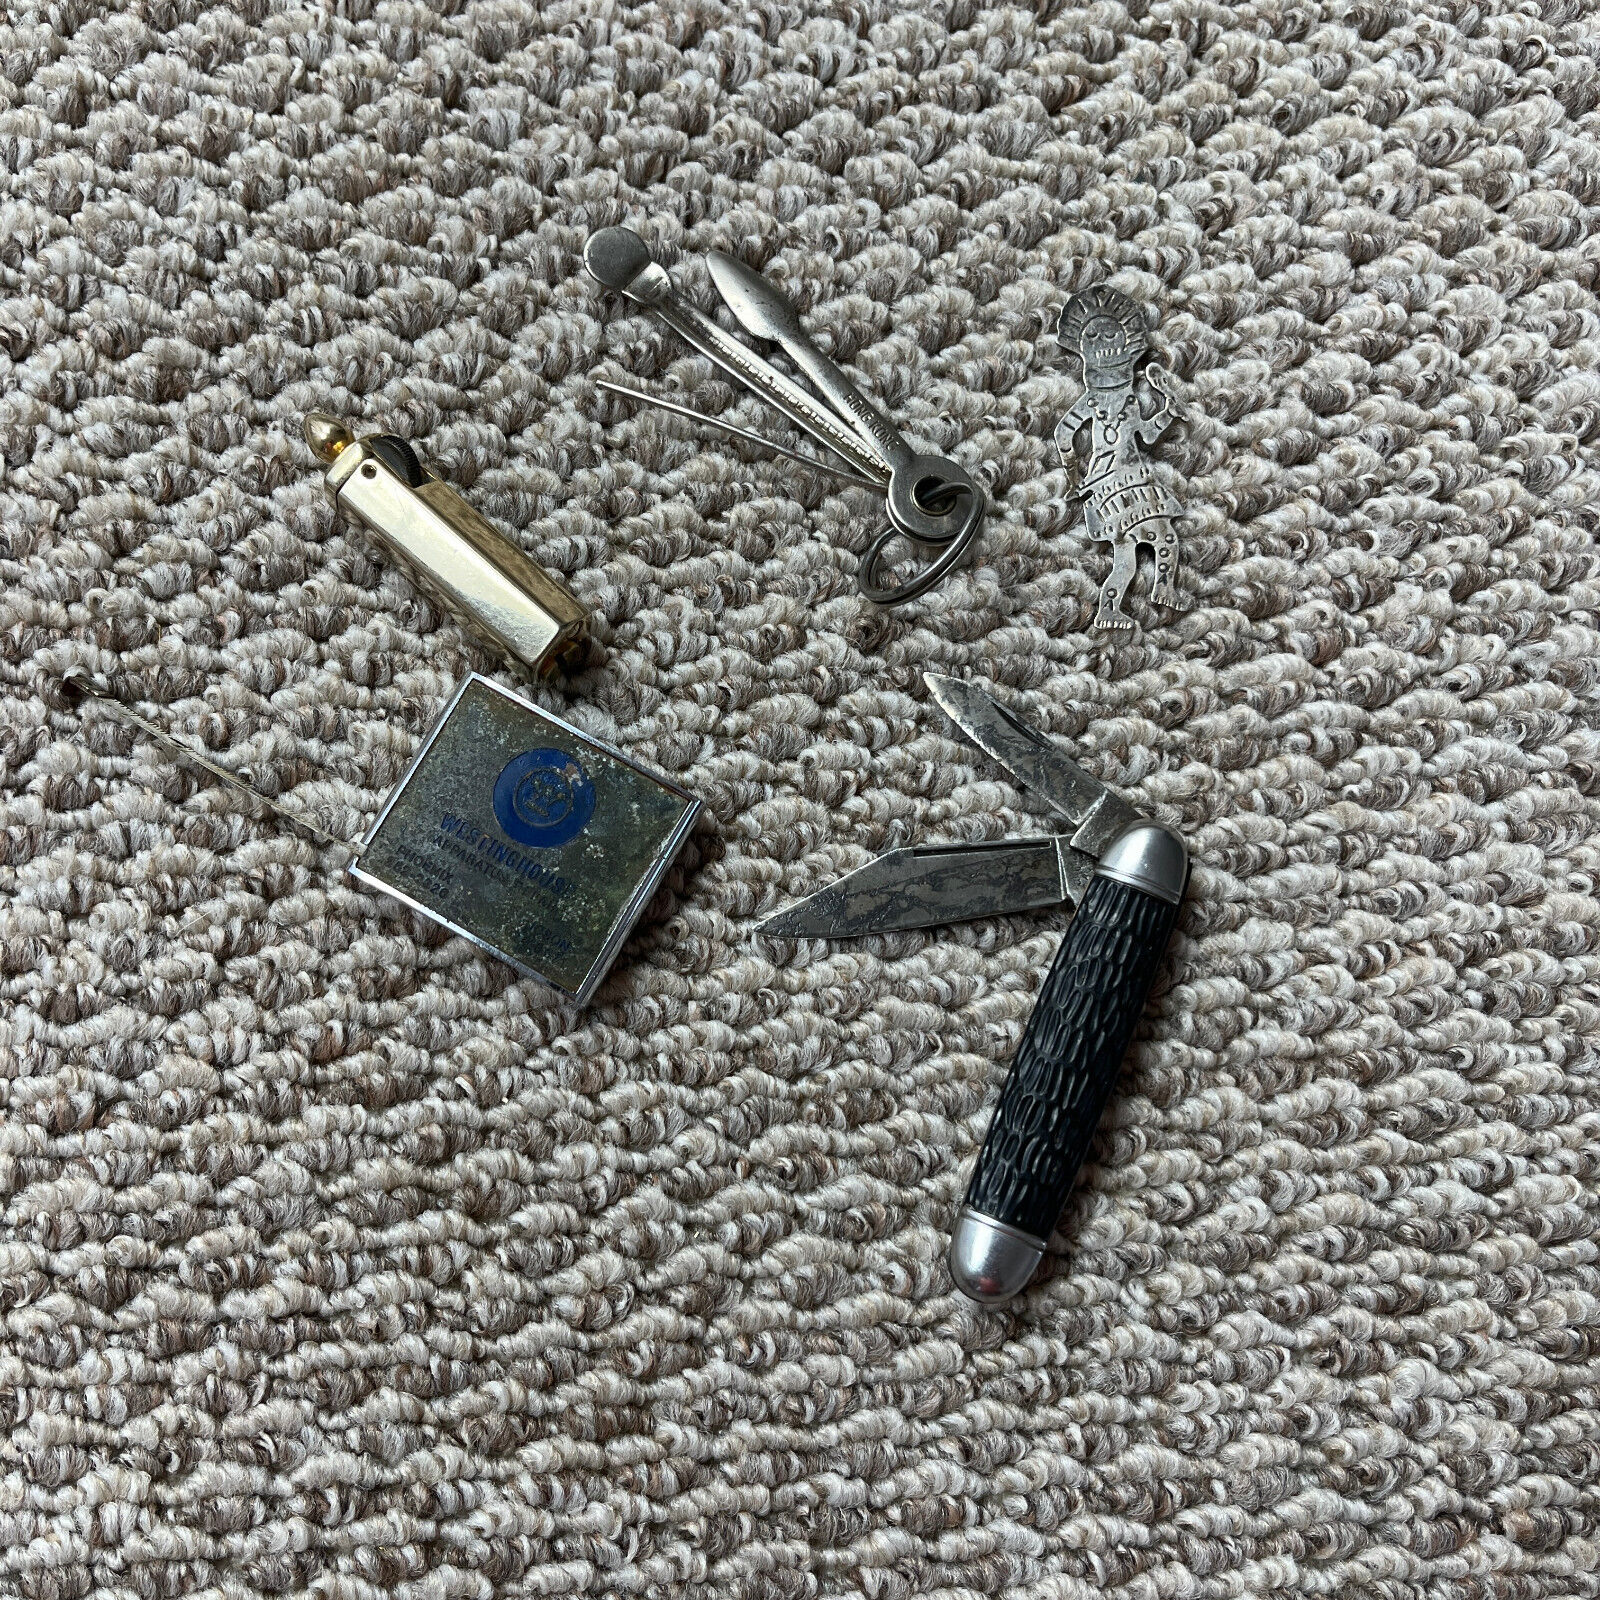 Vintage Junk Drawer Lot Pocket Knife Lighter Tape Measure Kachina Trinkets Stuff